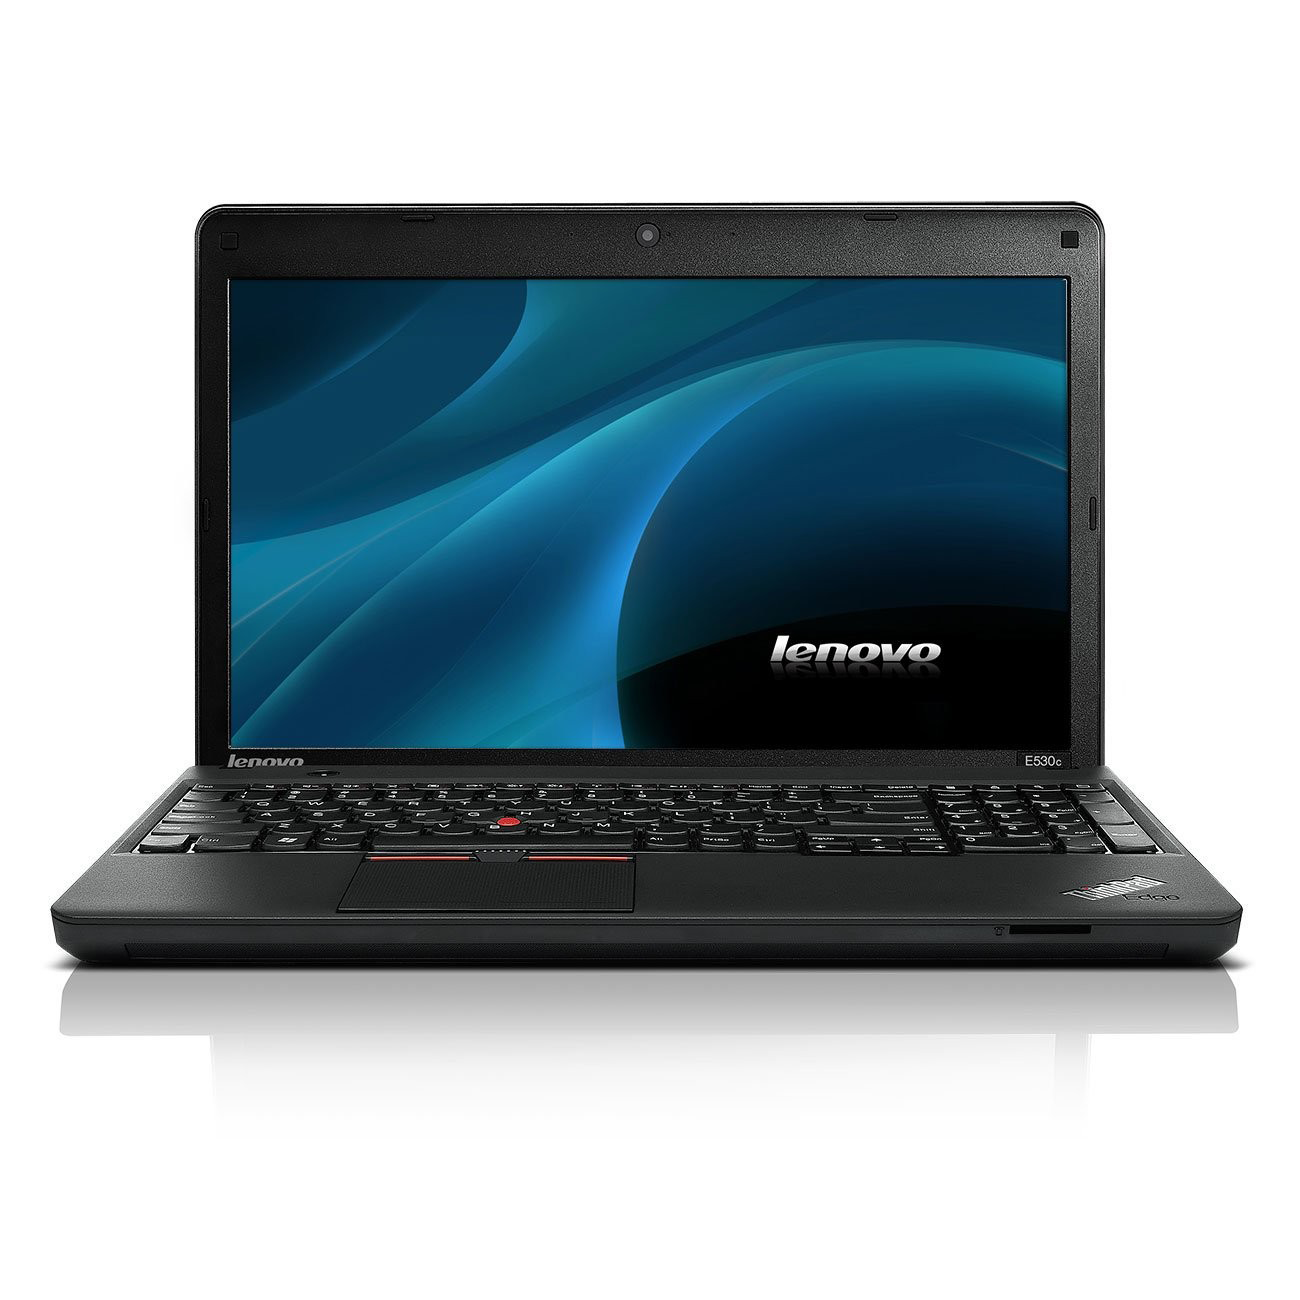 Lenovo ThinkPad Edge E530 Клас B| Лаптопи втора ръка | iZone